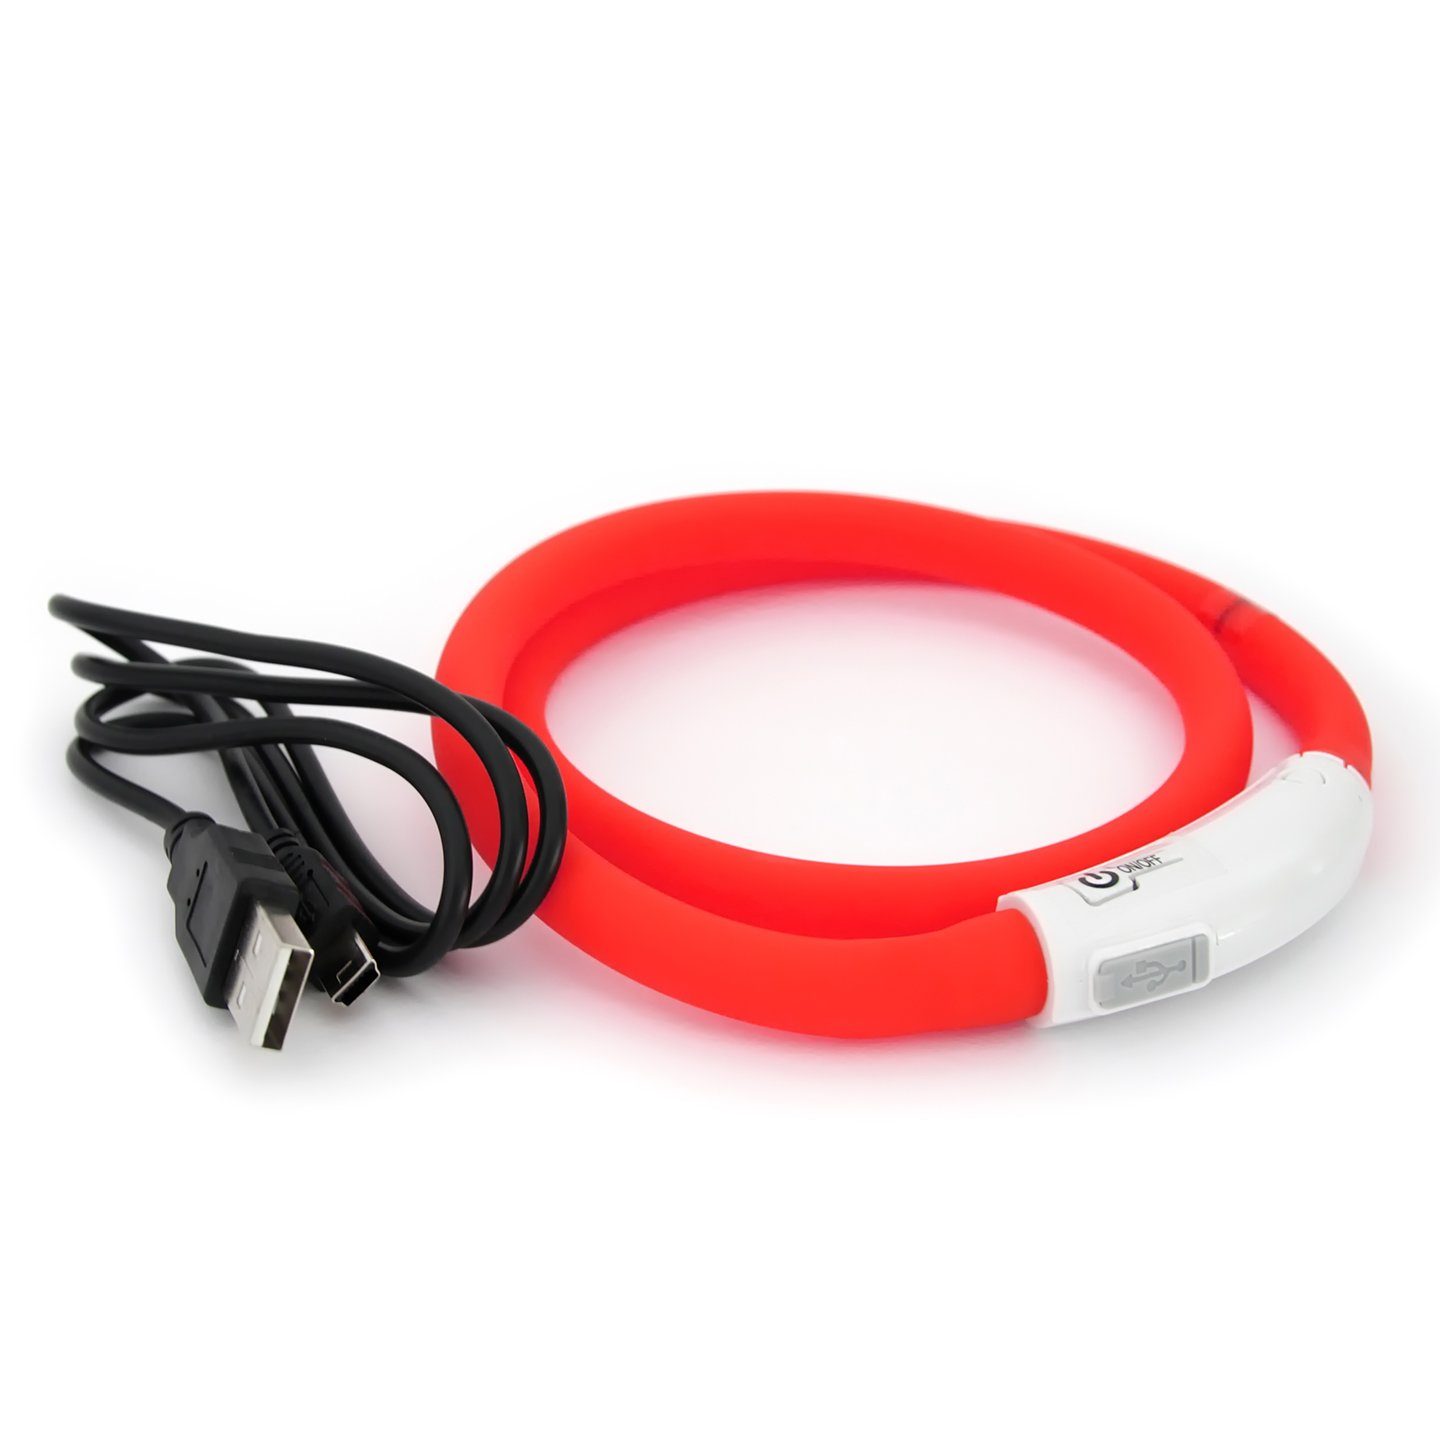 Iokheira LED Hundehalsband Schwarz 7 Beleuchtungsmodi USB aufladbar blinkendes Hundehalsband aus weichem Polyester & Netz für Sicherheit und Sichtbarkeit bei Nacht